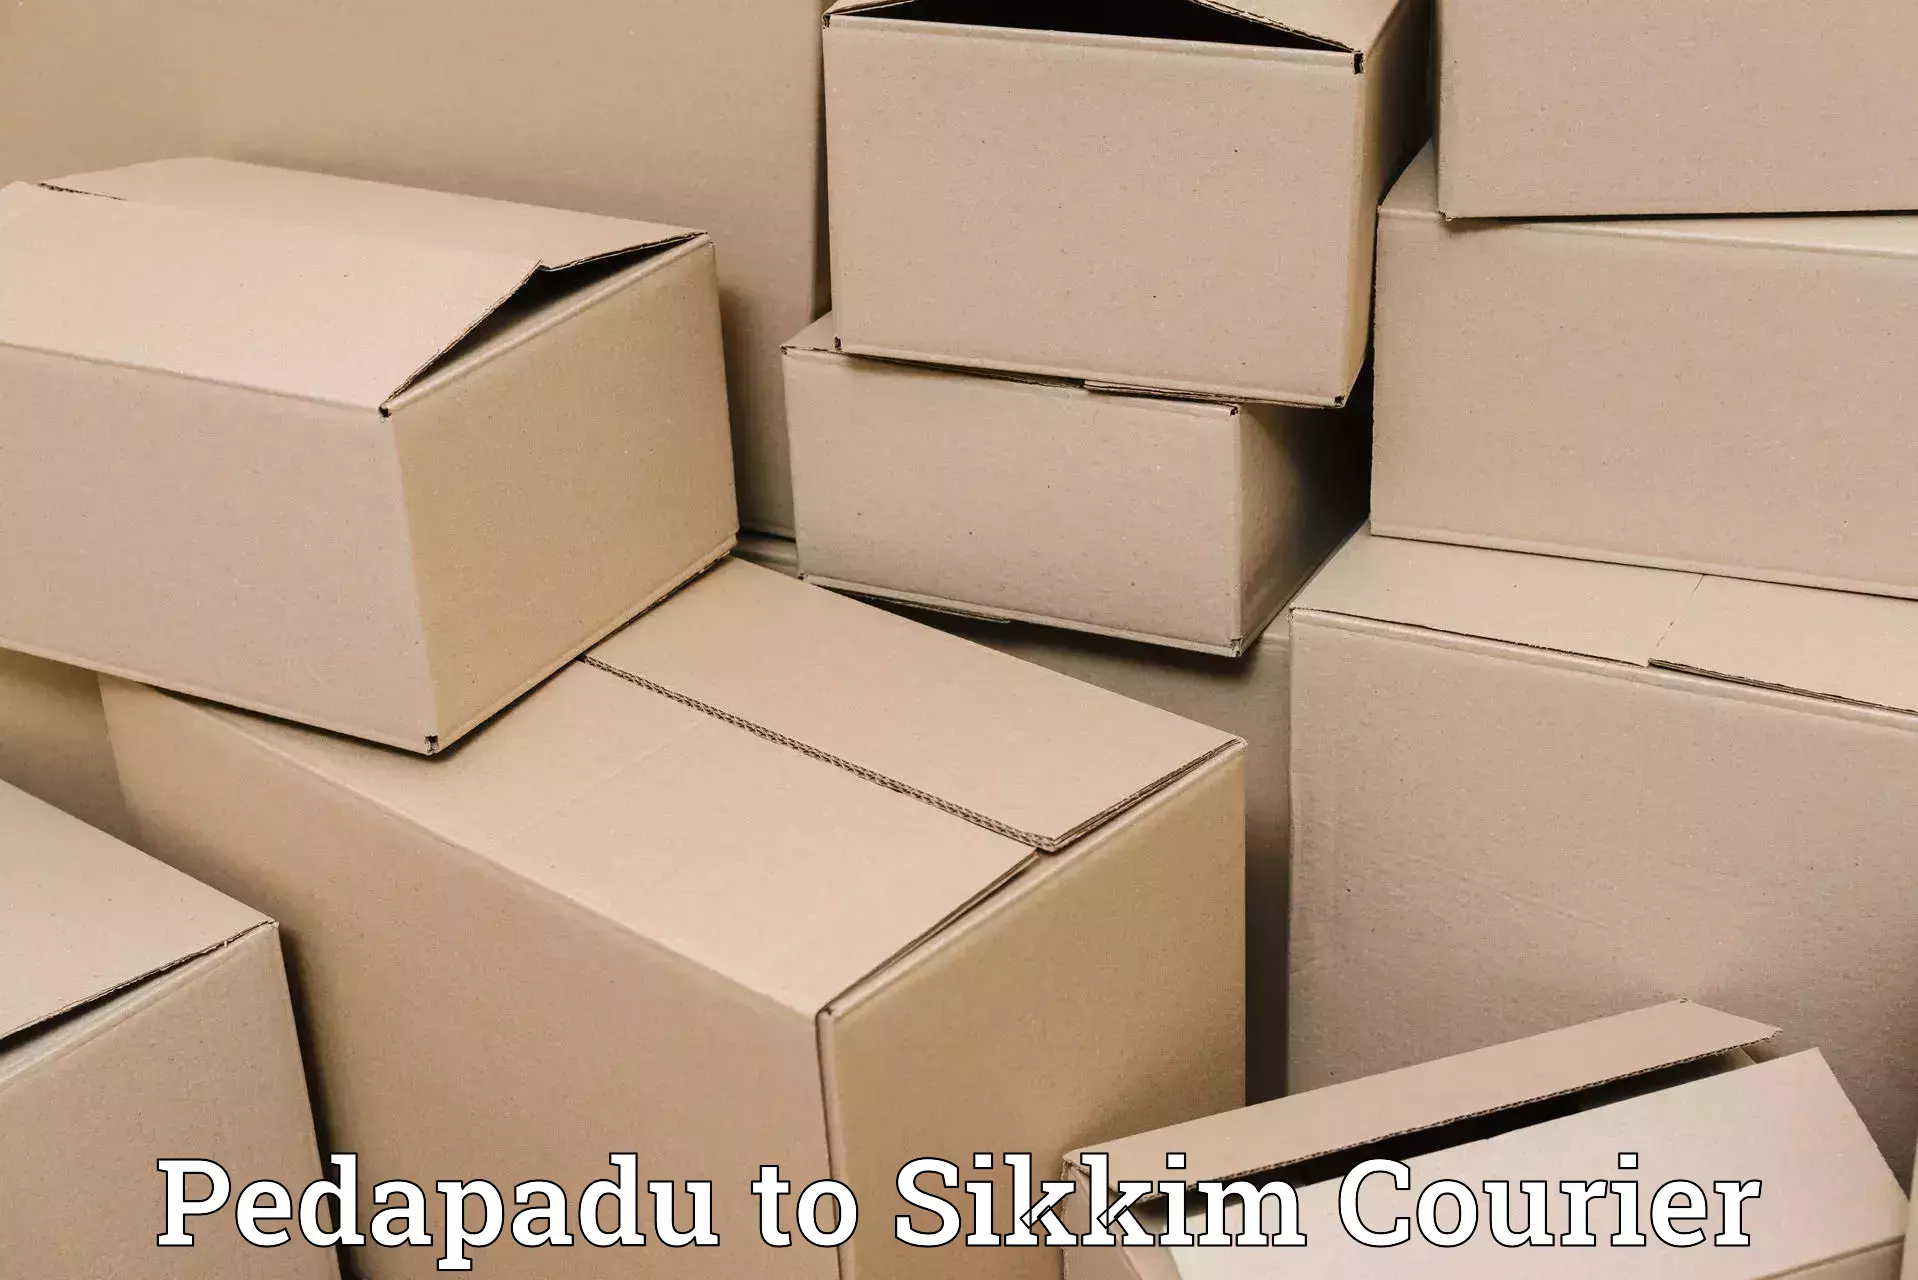 Digital courier platforms Pedapadu to Gangtok